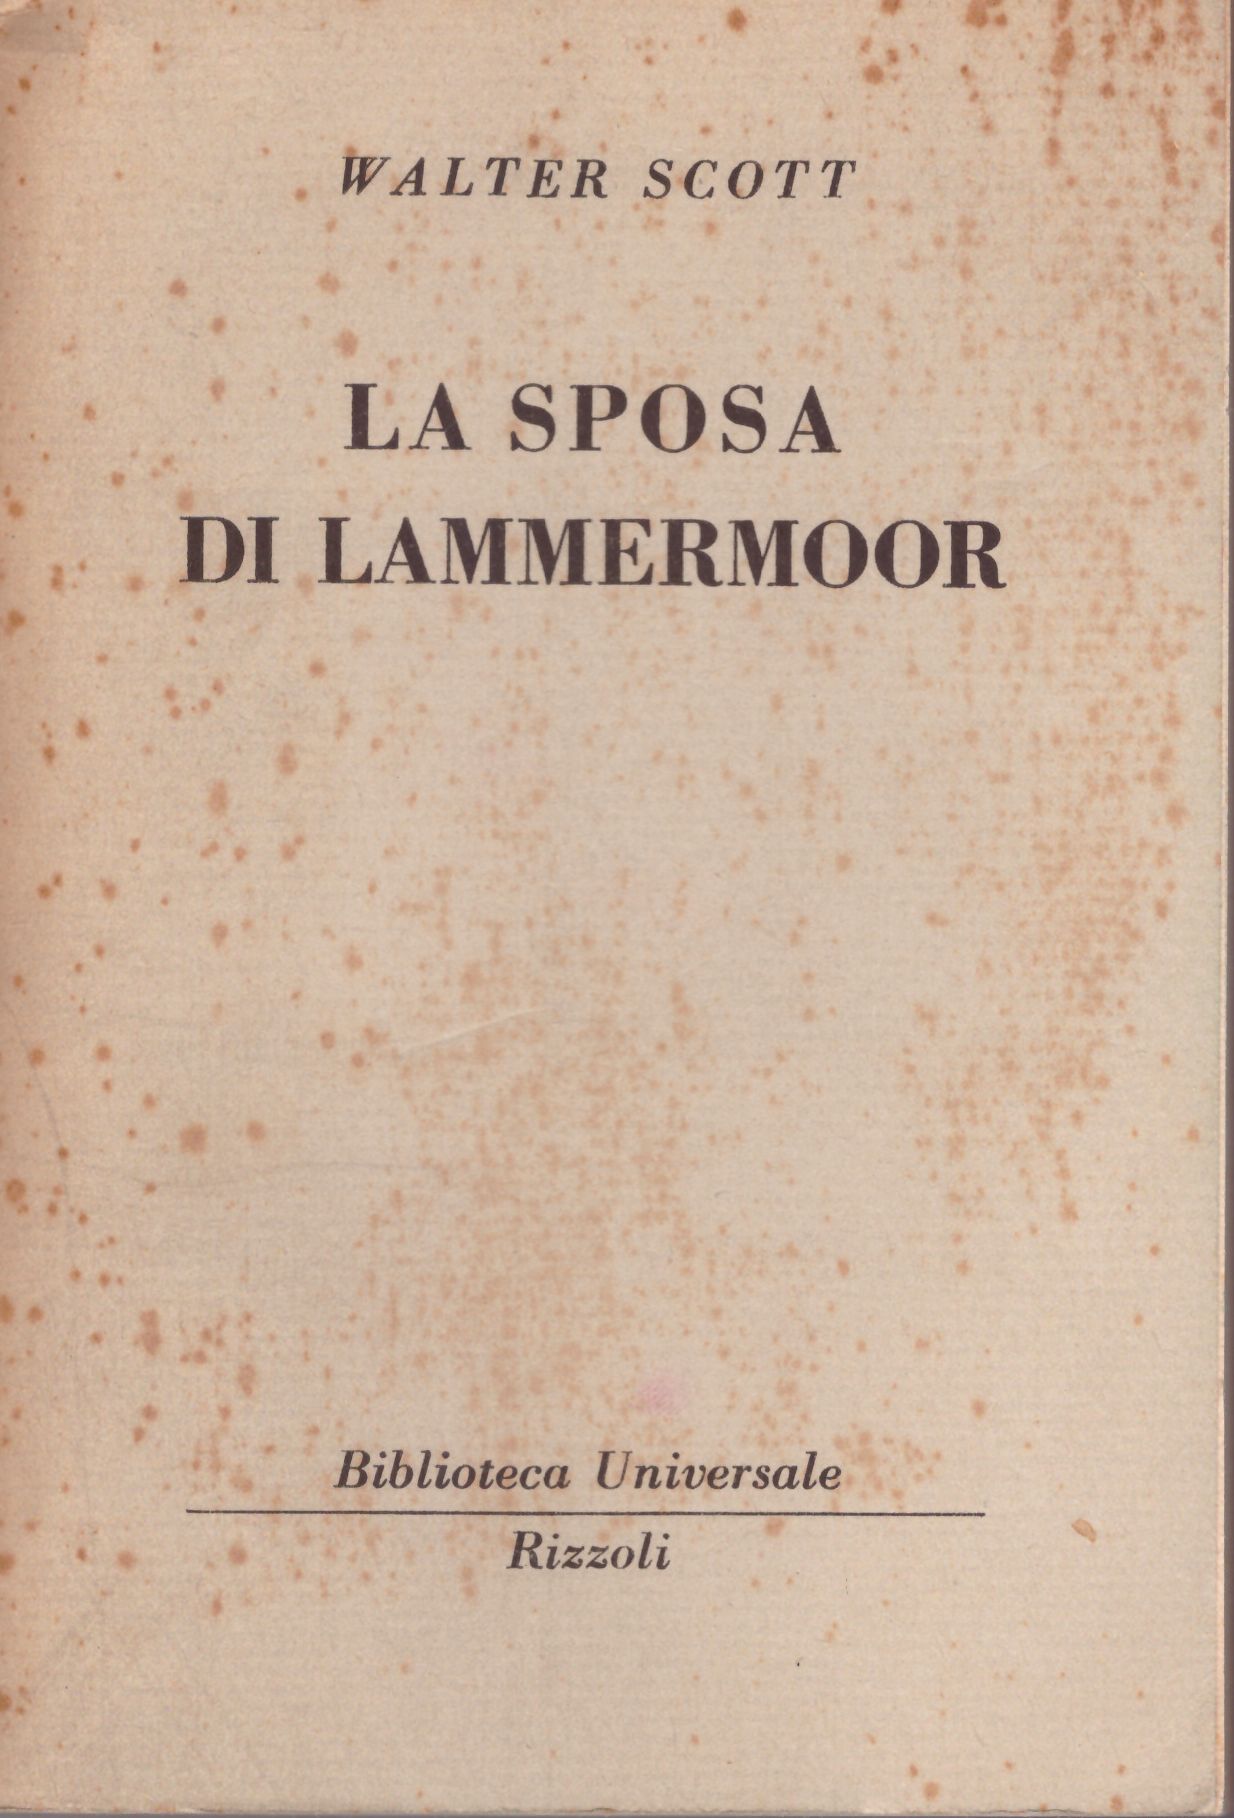 More about La sposa di Lammermoor